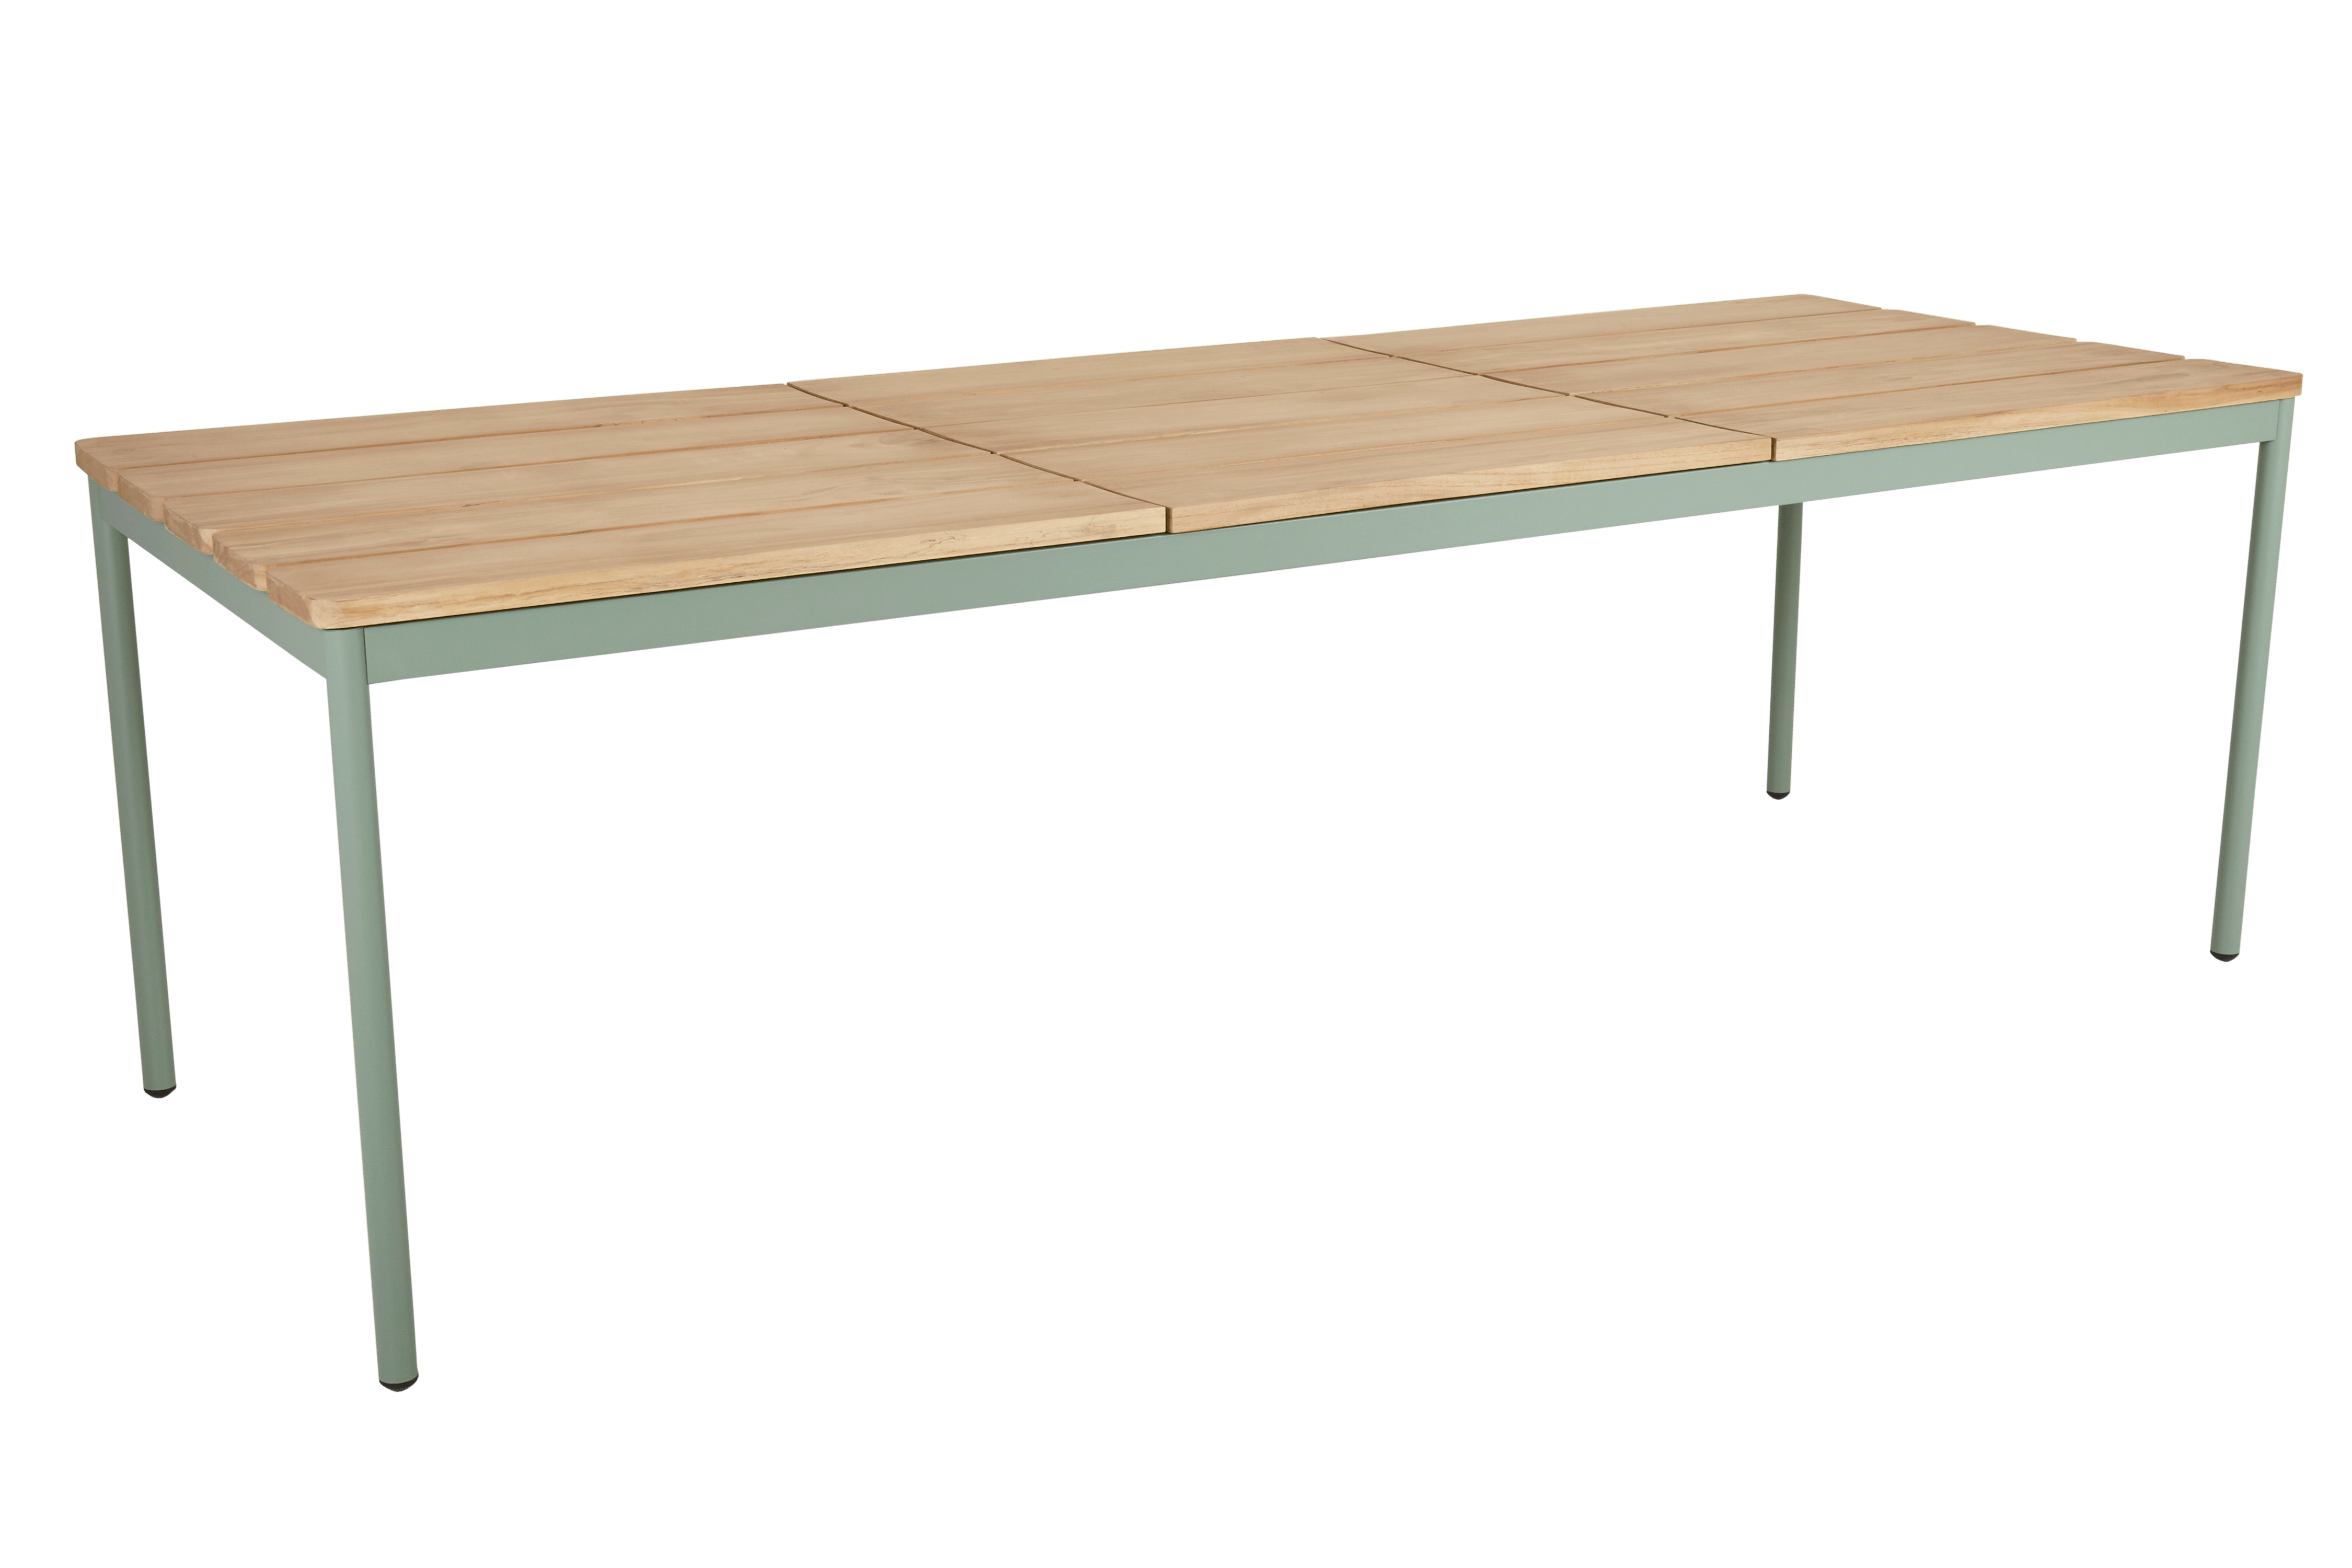 Moebel, Tabelle, Esstisch, Schreibtisch, Bank